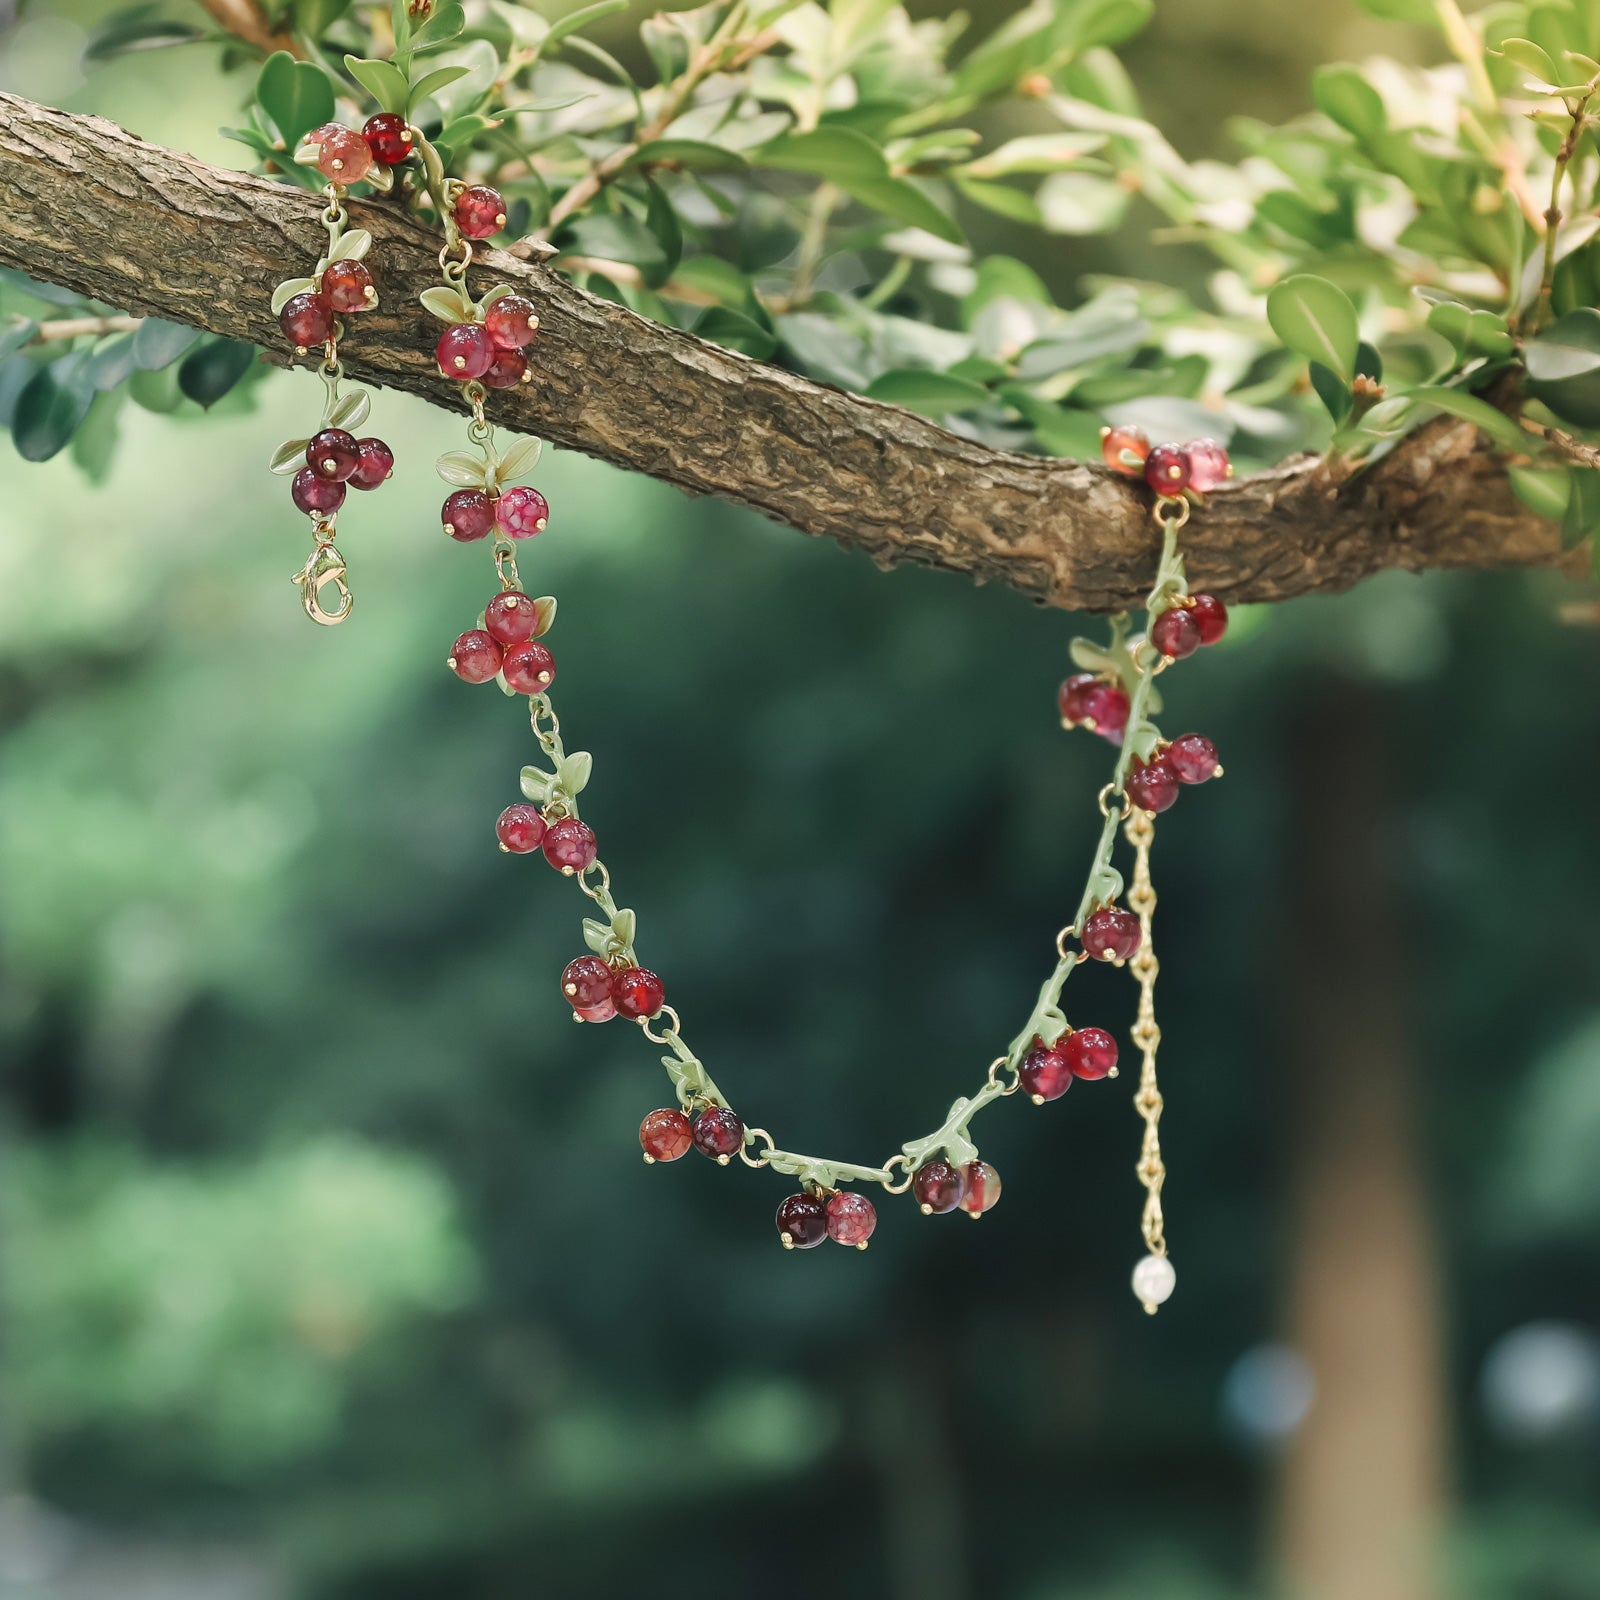 Cranberry Fruit Necklace